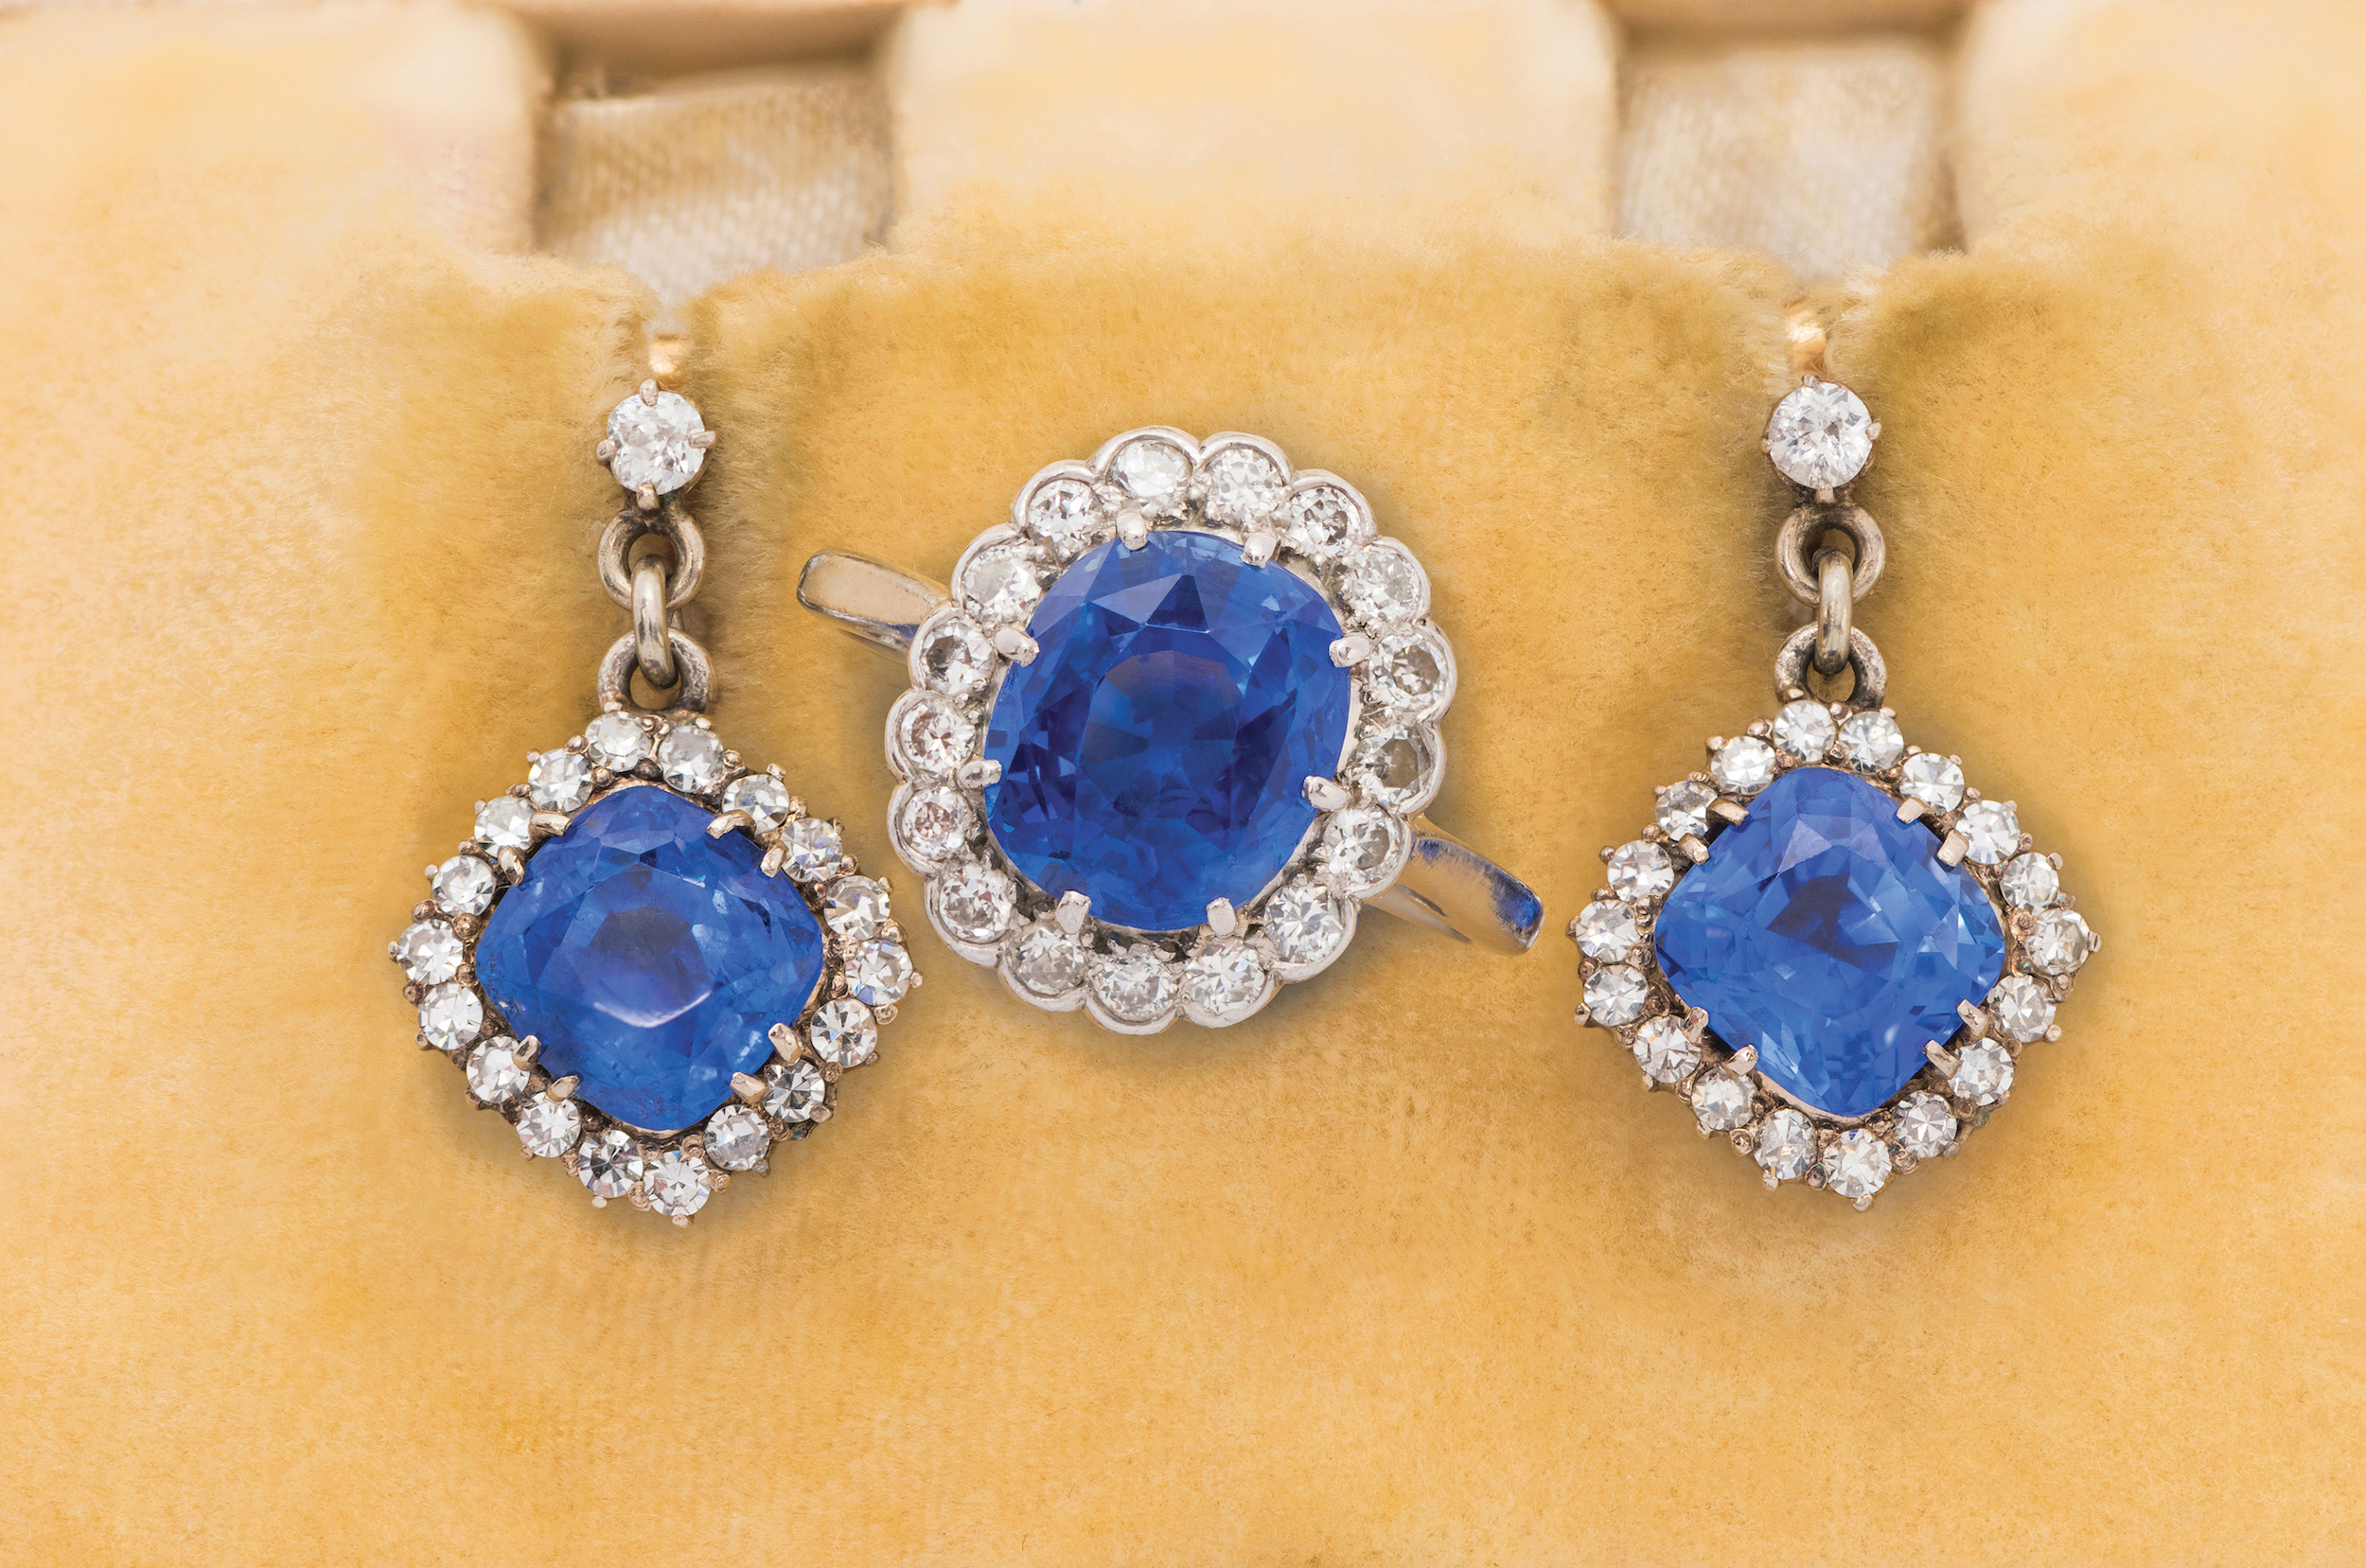 一枚鑽石和藍寶石戒指以及一對鑽石和藍寶石耳環